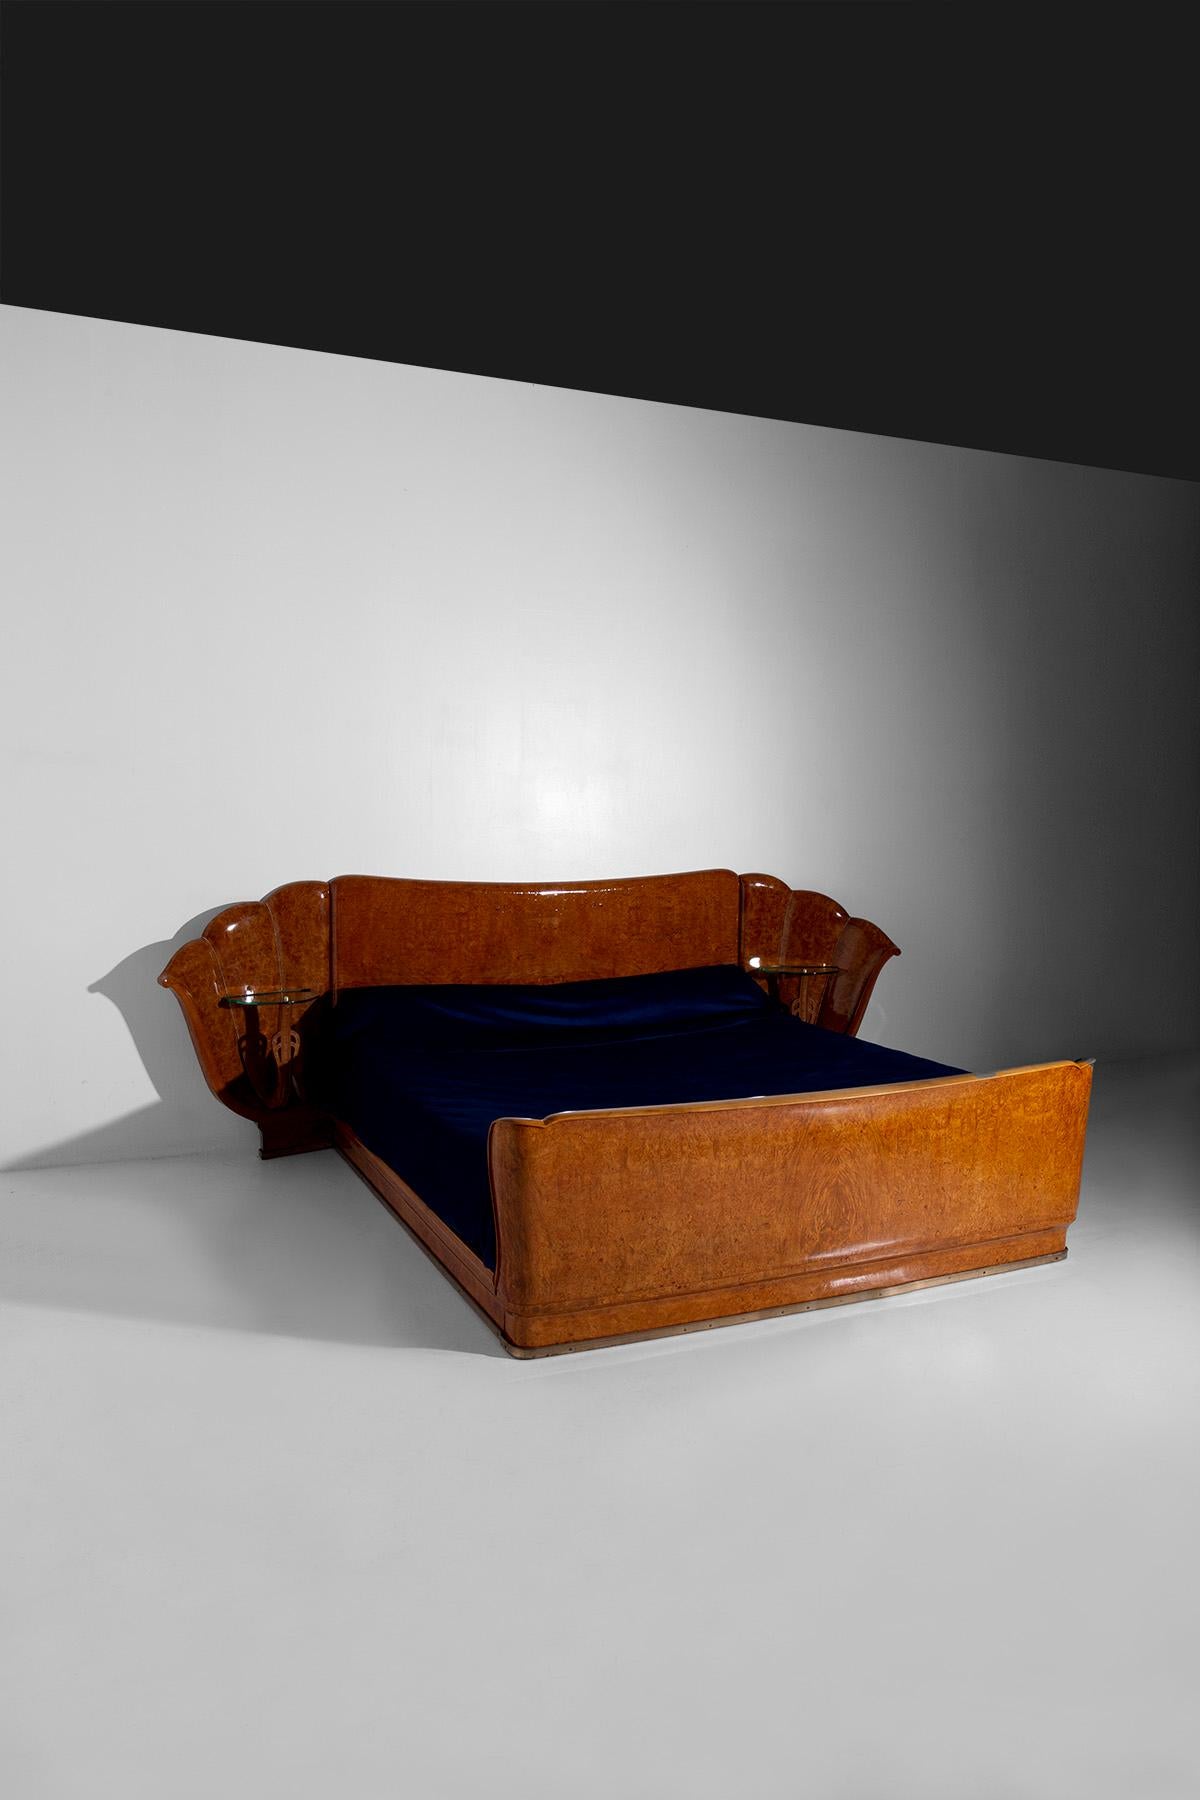 Tauchen Sie ein in die Welt des italienischen Handwerks und der Kunst der 1950er Jahre mit diesem wunderbaren Bett, einer Kreation von Valzania, die den zeitlosen Reiz des Art-déco-Stils verkörpert. Dieses vollständig aus Birkenholz gefertigte Bett